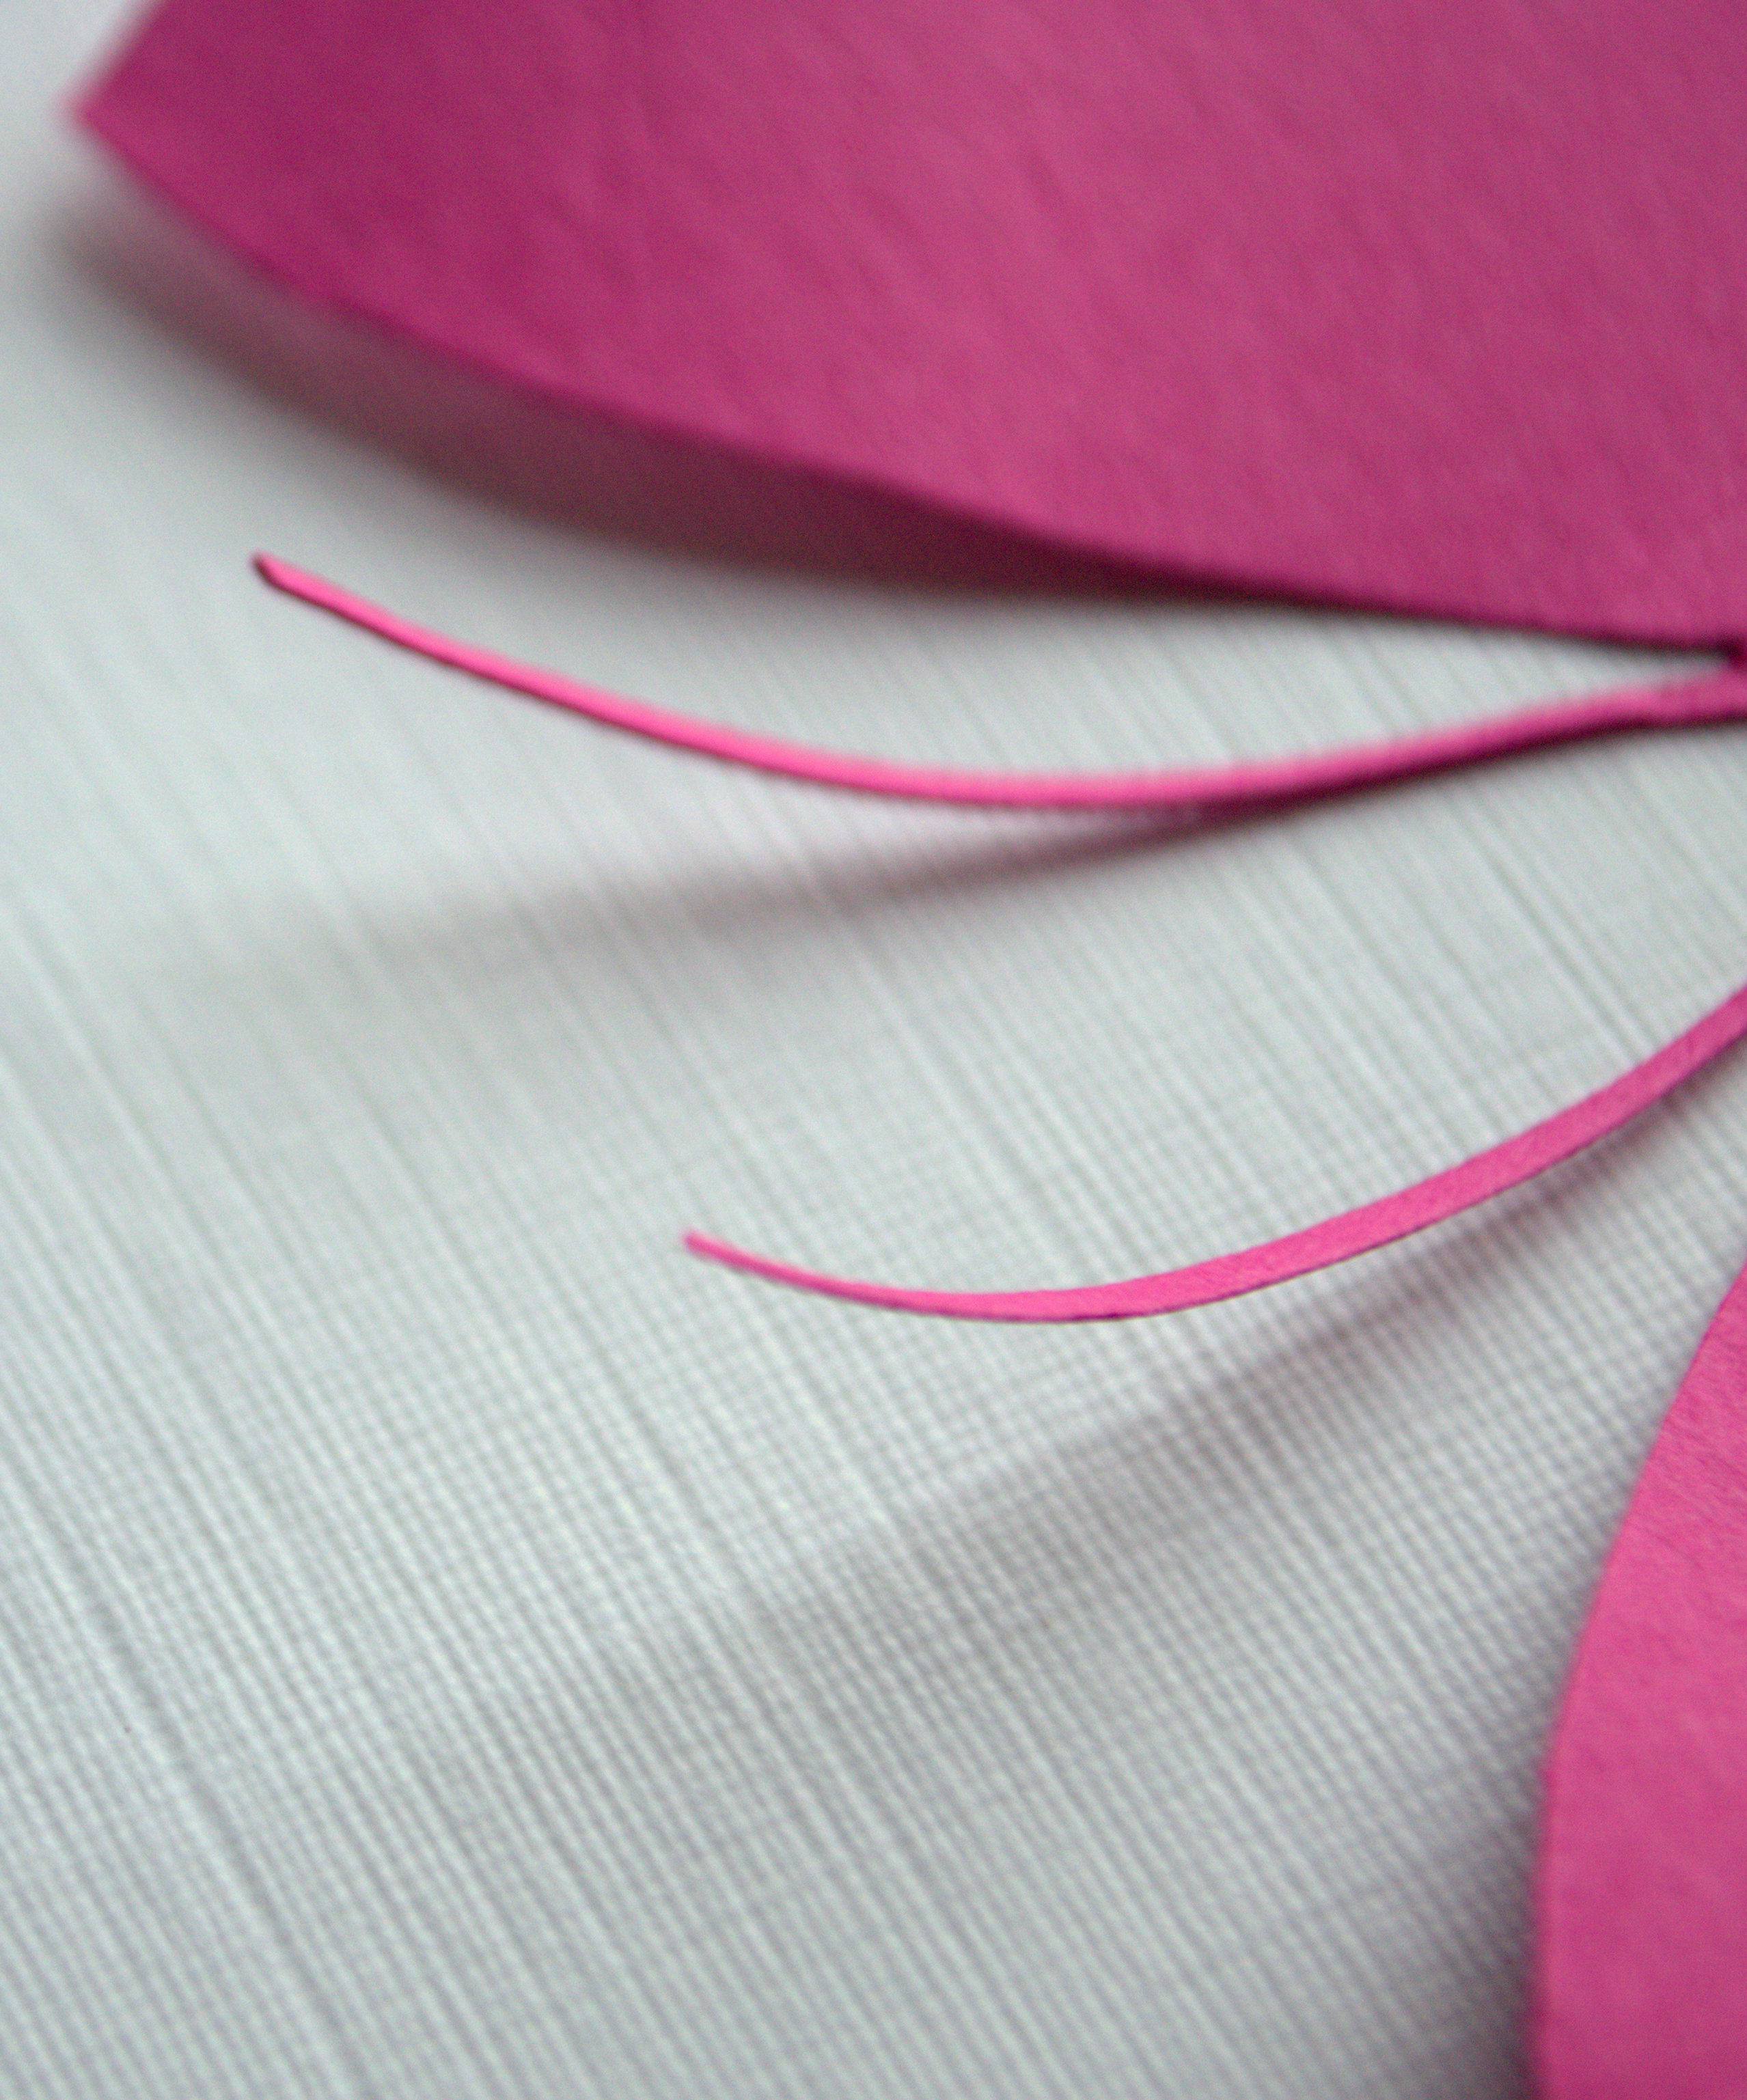 Linen Cardstock: Linen Textured Paper, Embossed